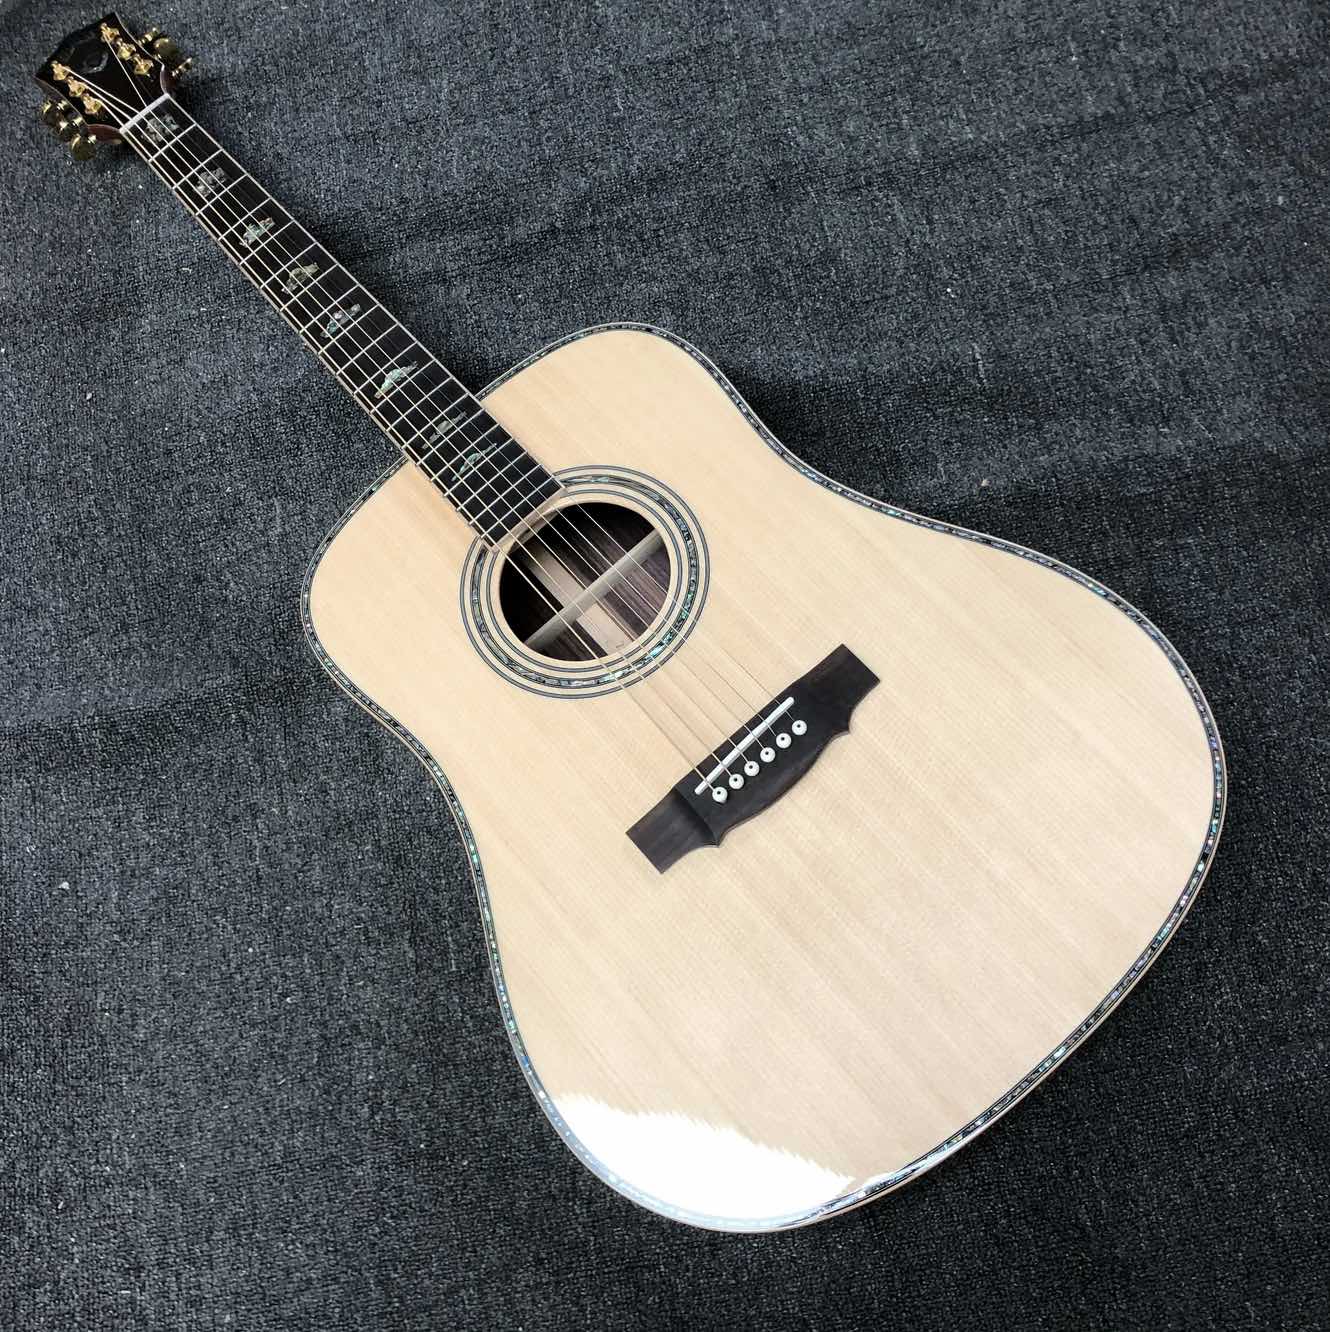 Изготовленная на заказ 41-дюймовая акустическая гитара с трехслойным грифом Guild D-100s из массива ели